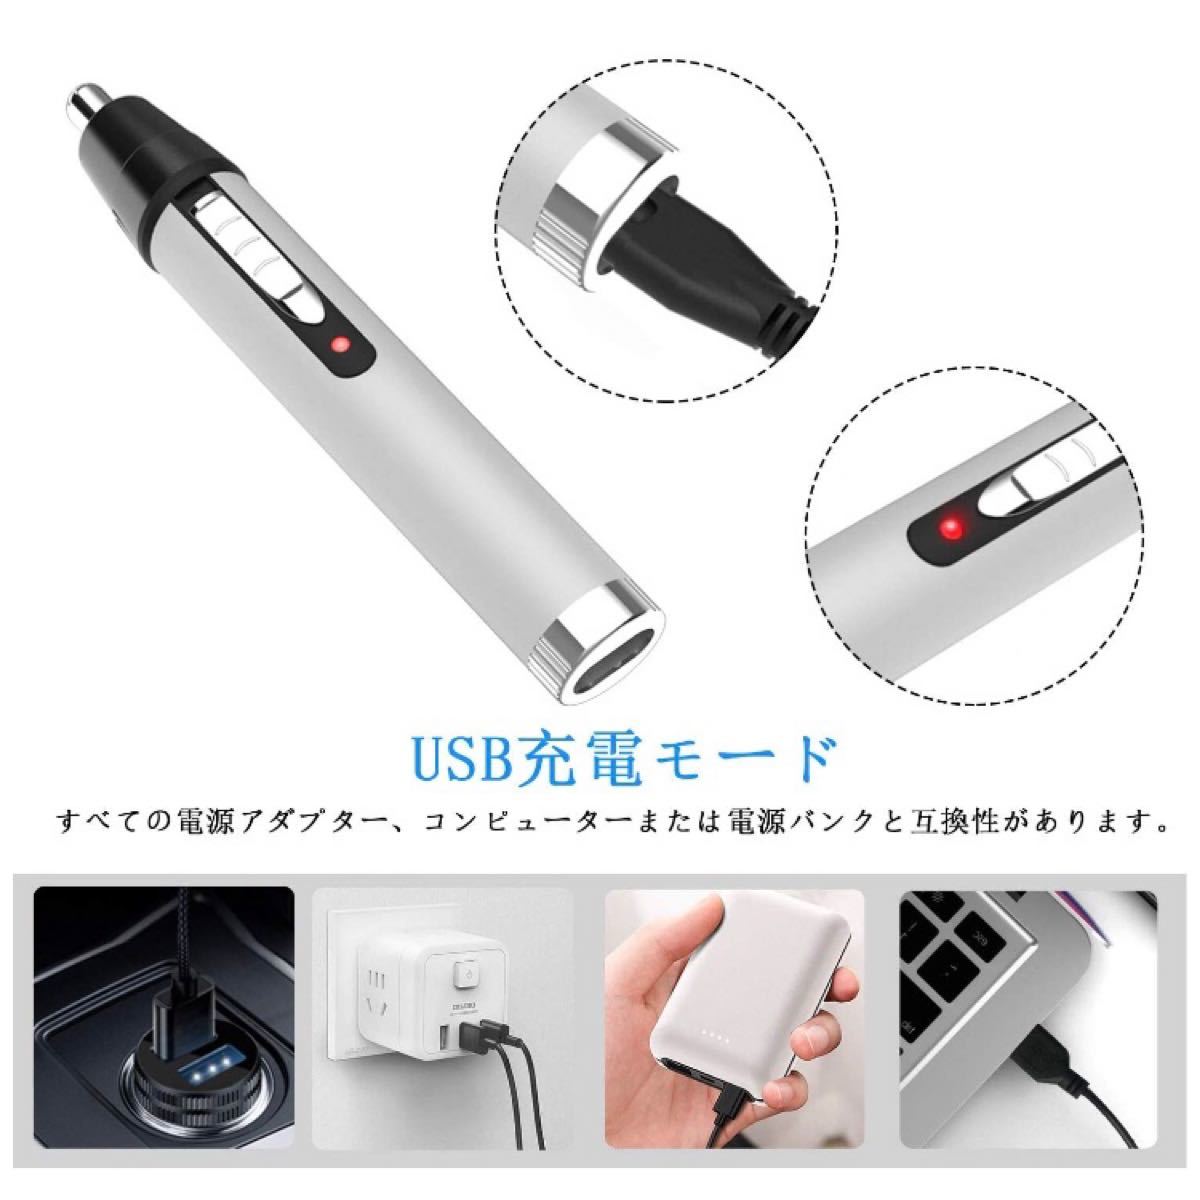 【新品】 電気シェーバー メンズシェーバー 鼻毛カッター USB充電 ひげそり